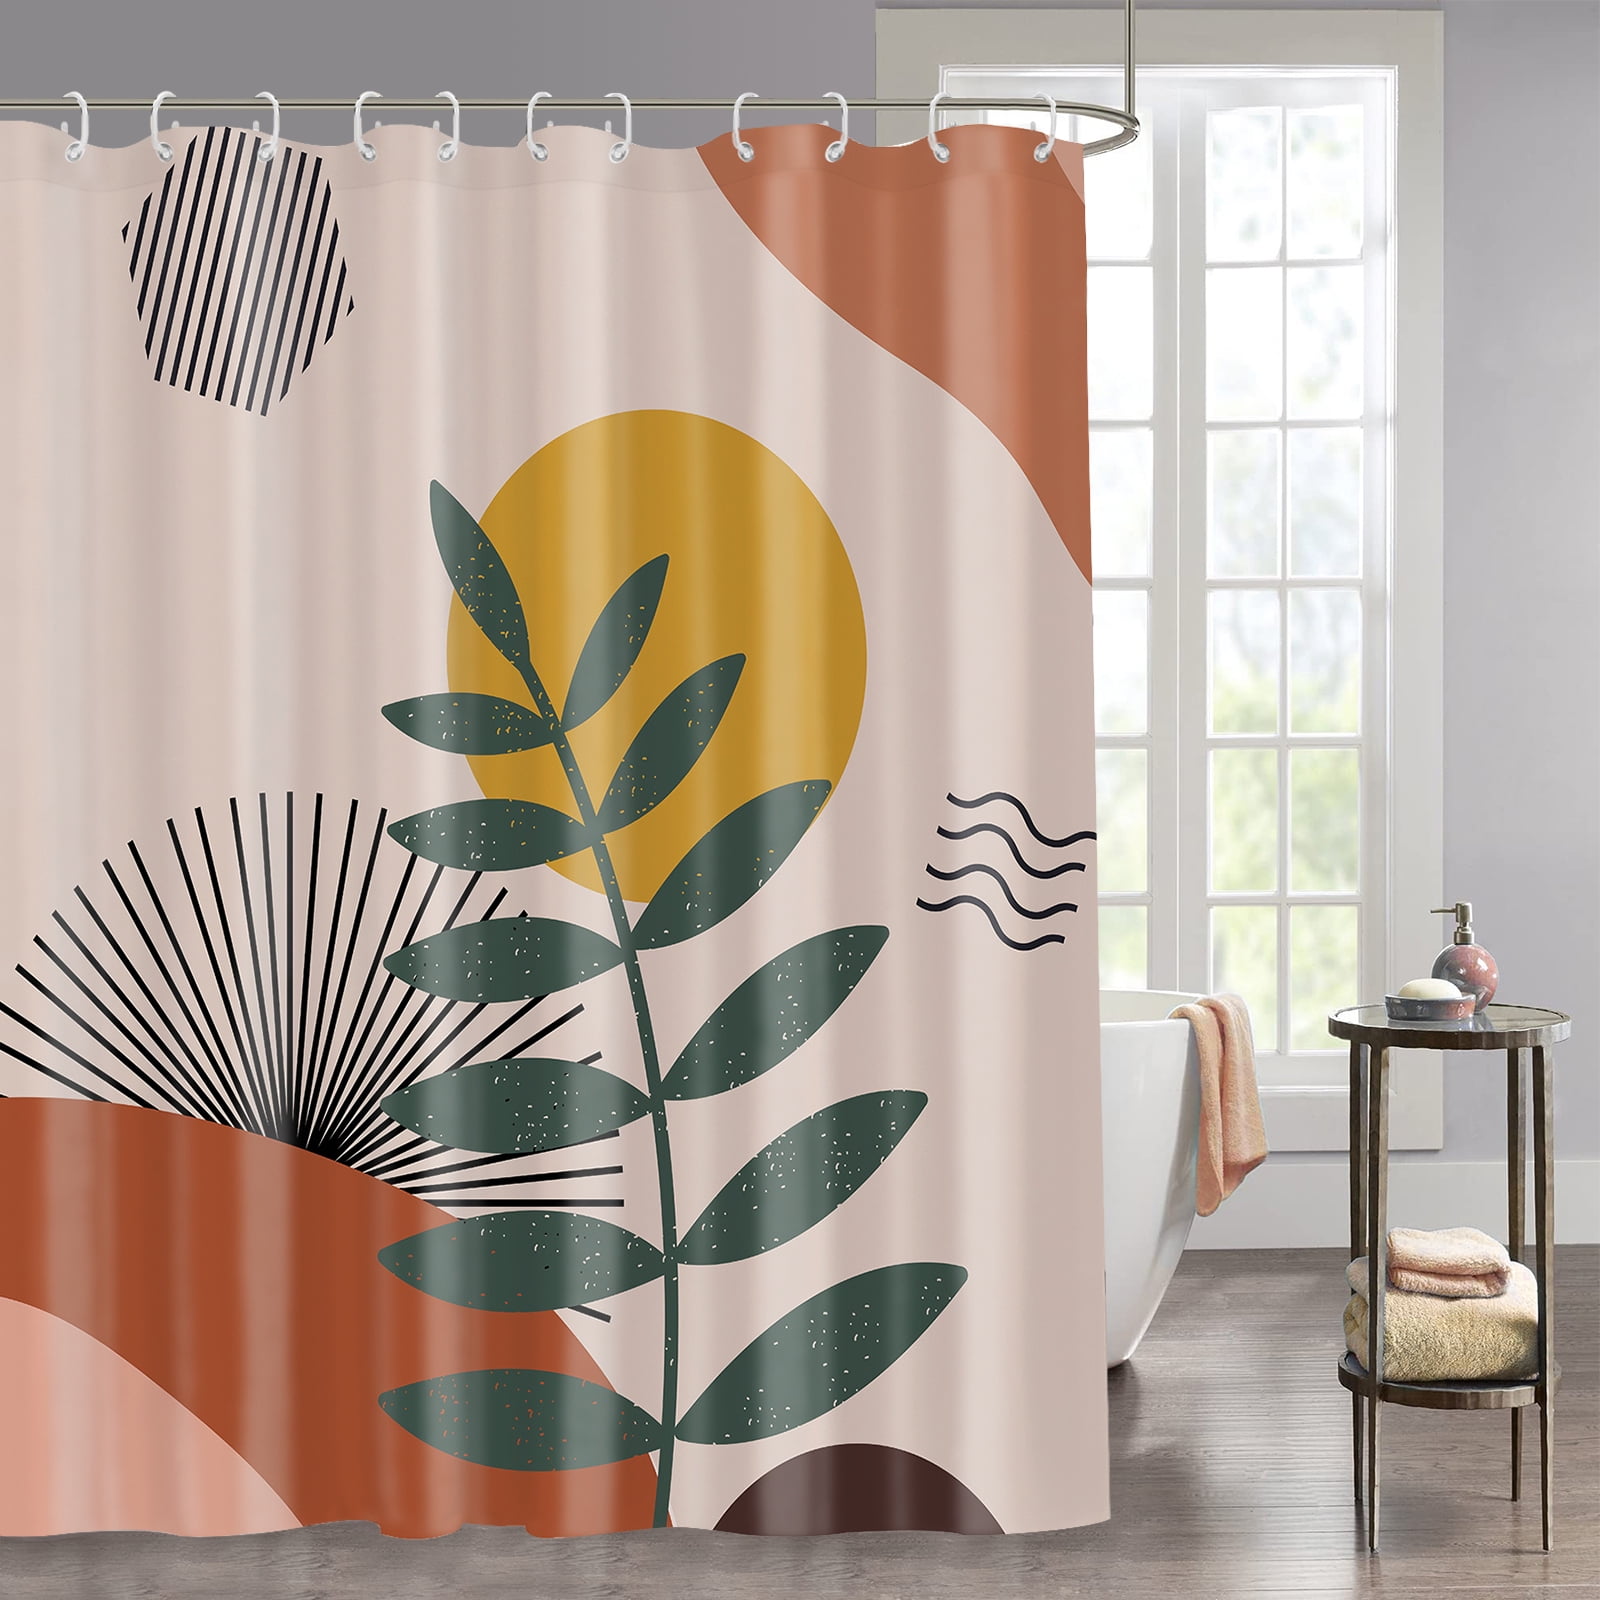 Color Sun and Moon Fantasy Shower Curtain Bathroom Decor Fabric & 12hooks 71x71“ 